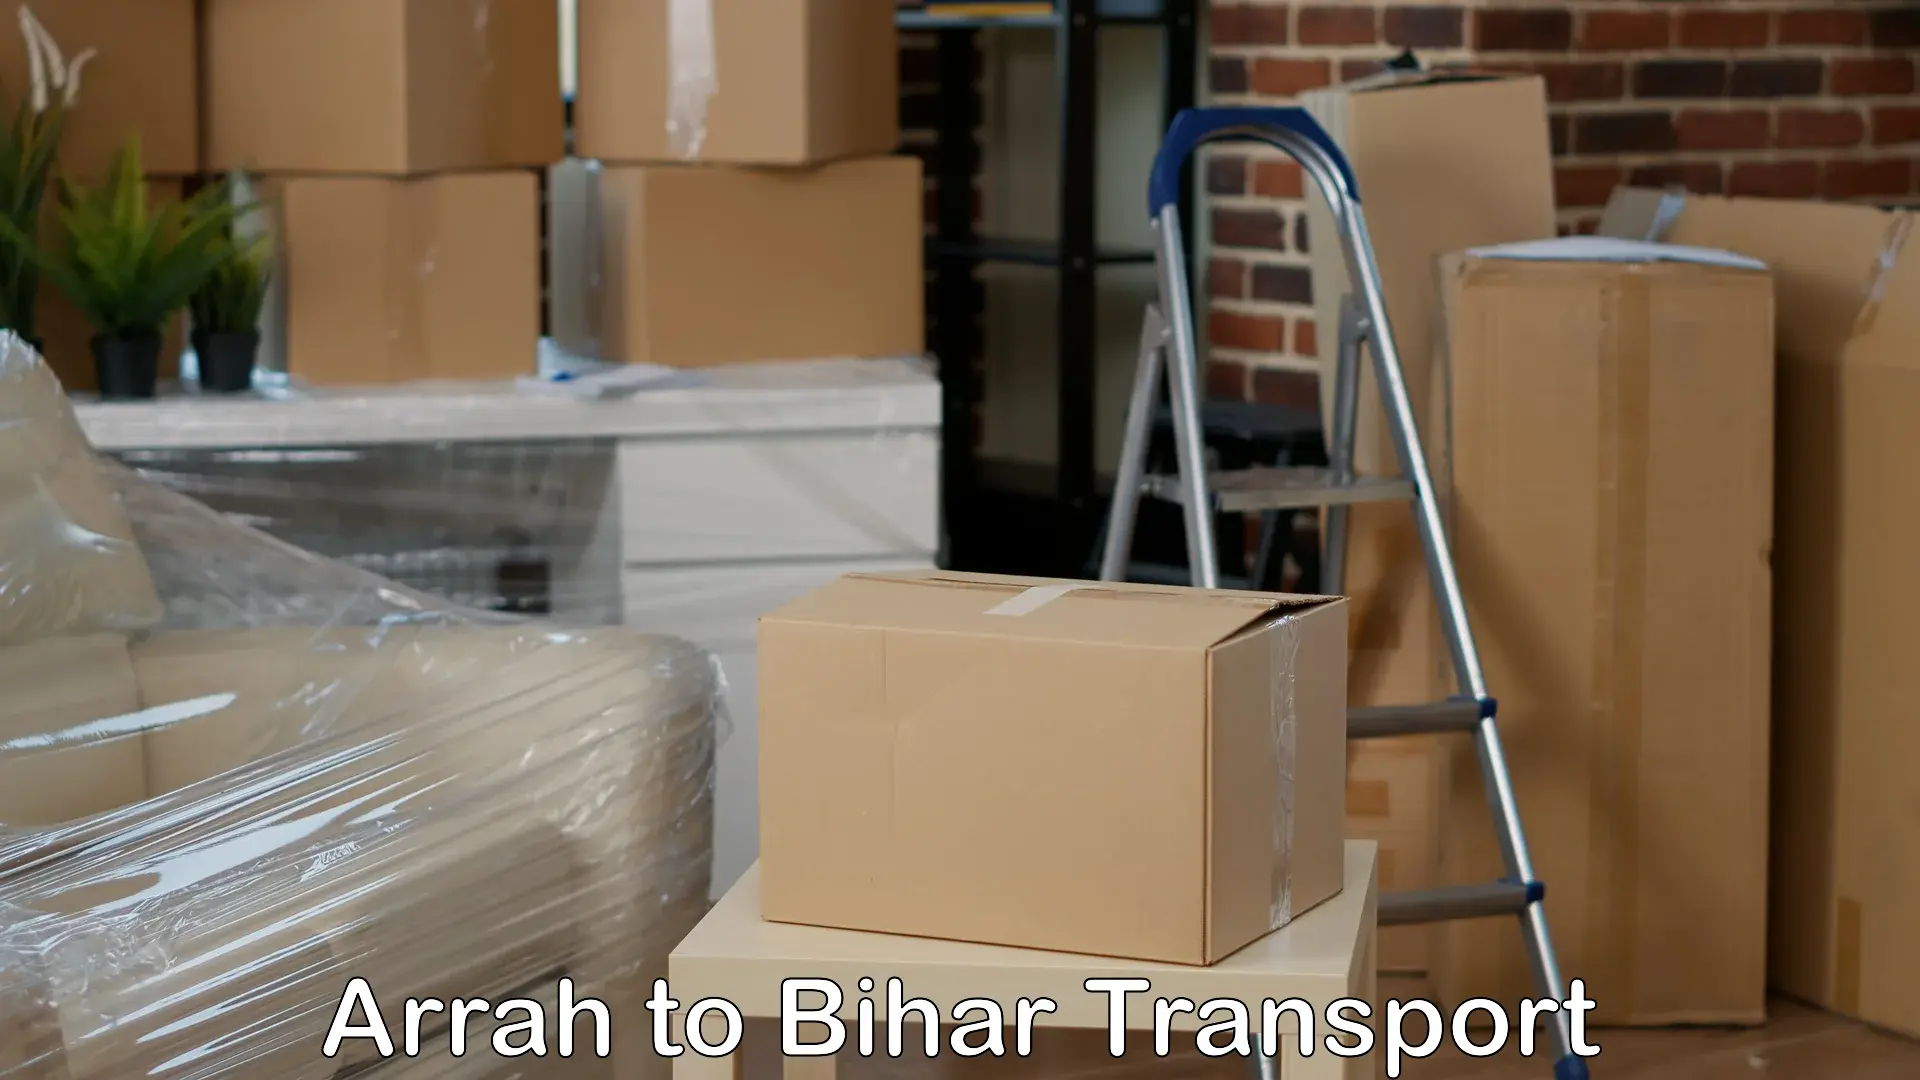 Truck transport companies in India Arrah to Minapur